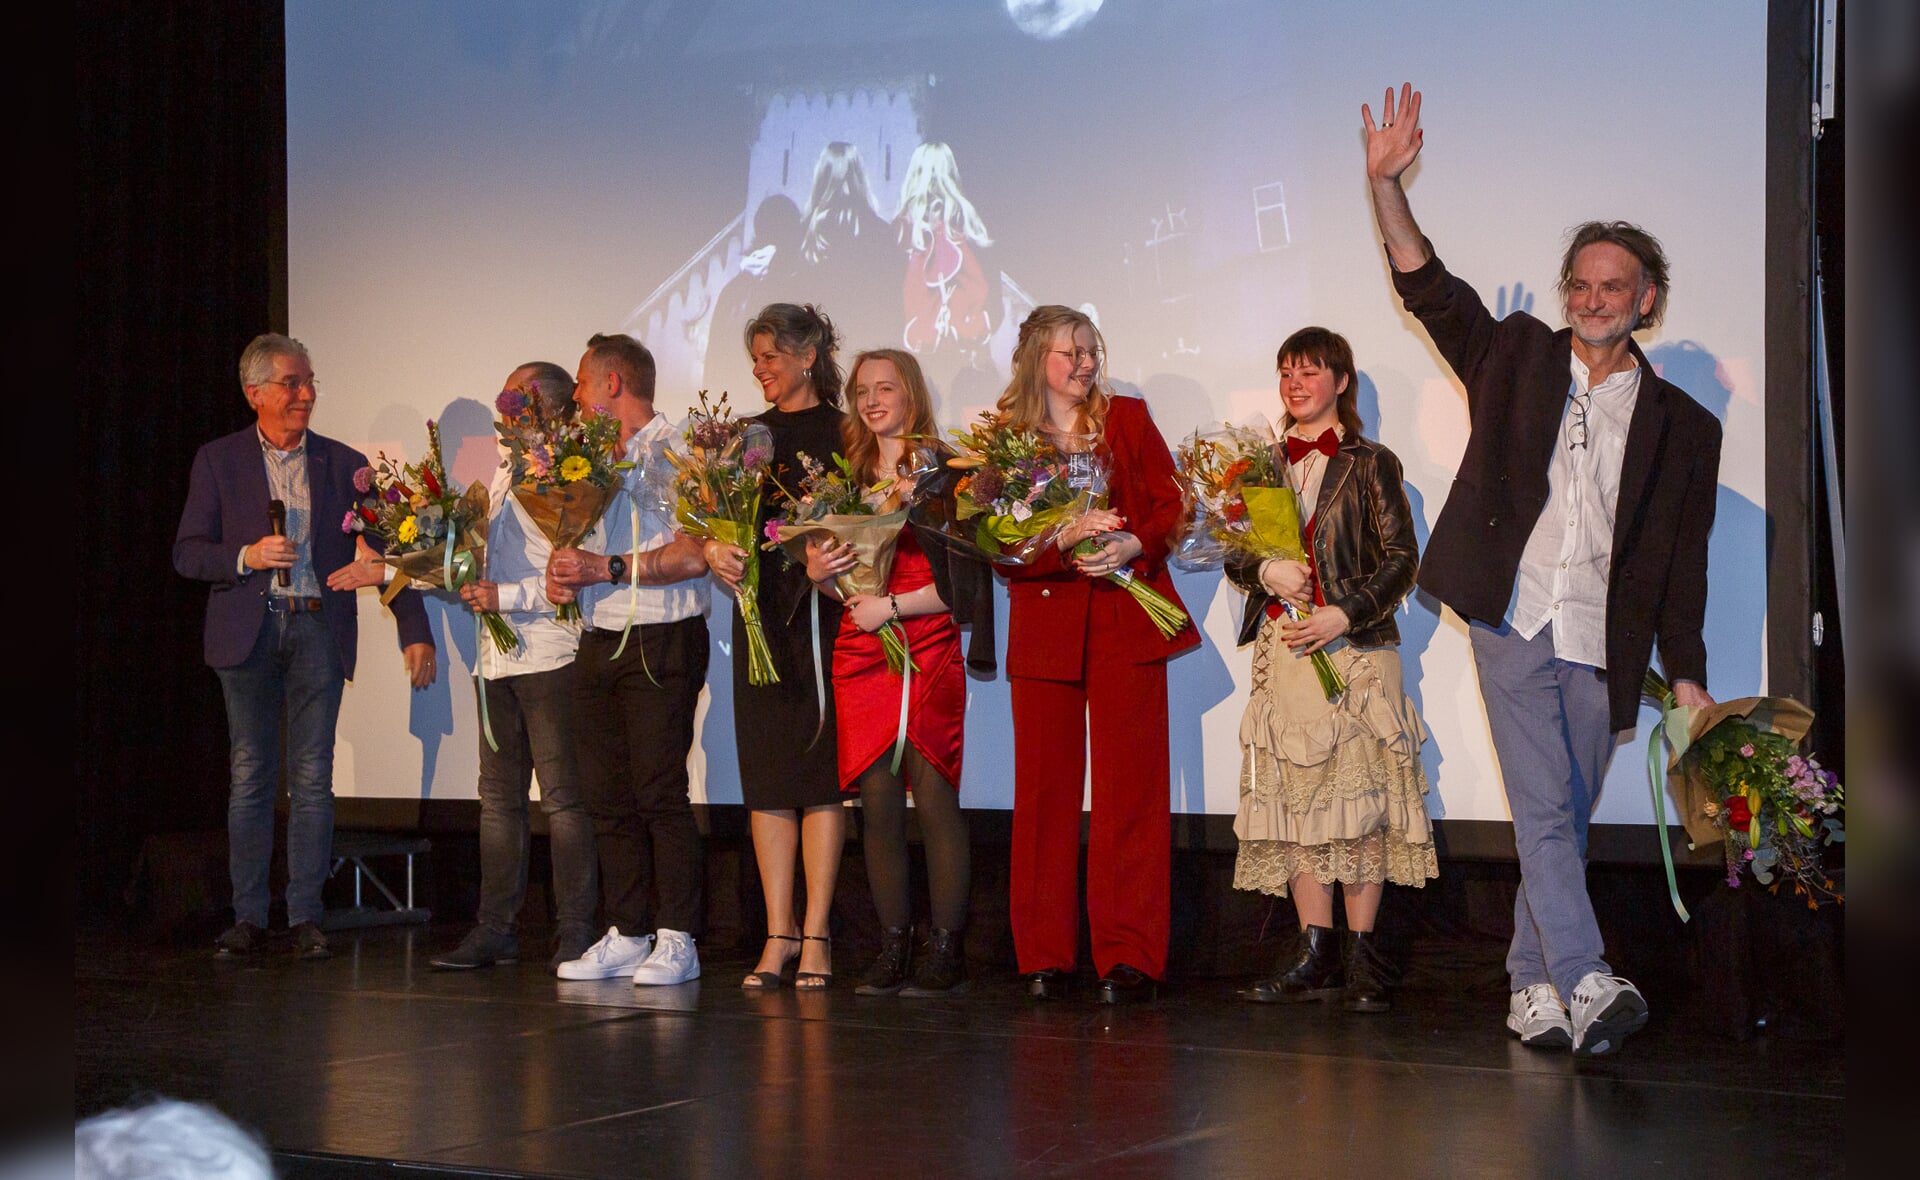 De première van de film Bloedverwanten was een succes. De cast en crew werden na afloop overladen met complimenten. Geheel rechts regisseur Maarten Melis.